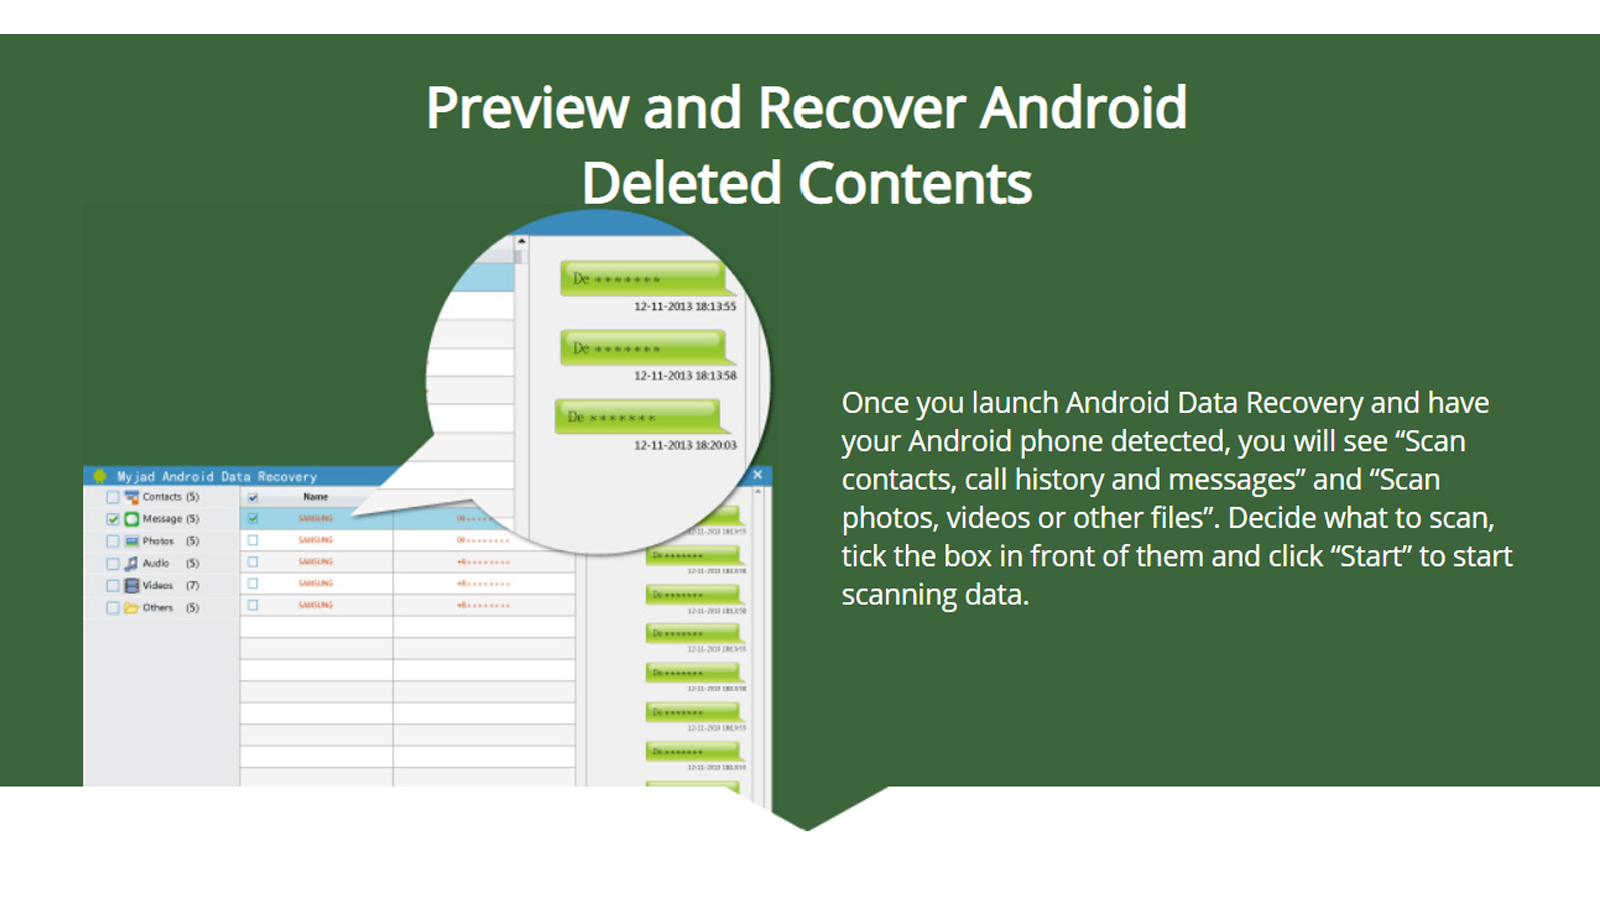 MyJad Android Data Recovery-appen kan återställa data och spara en kopia på ditt skrivbord